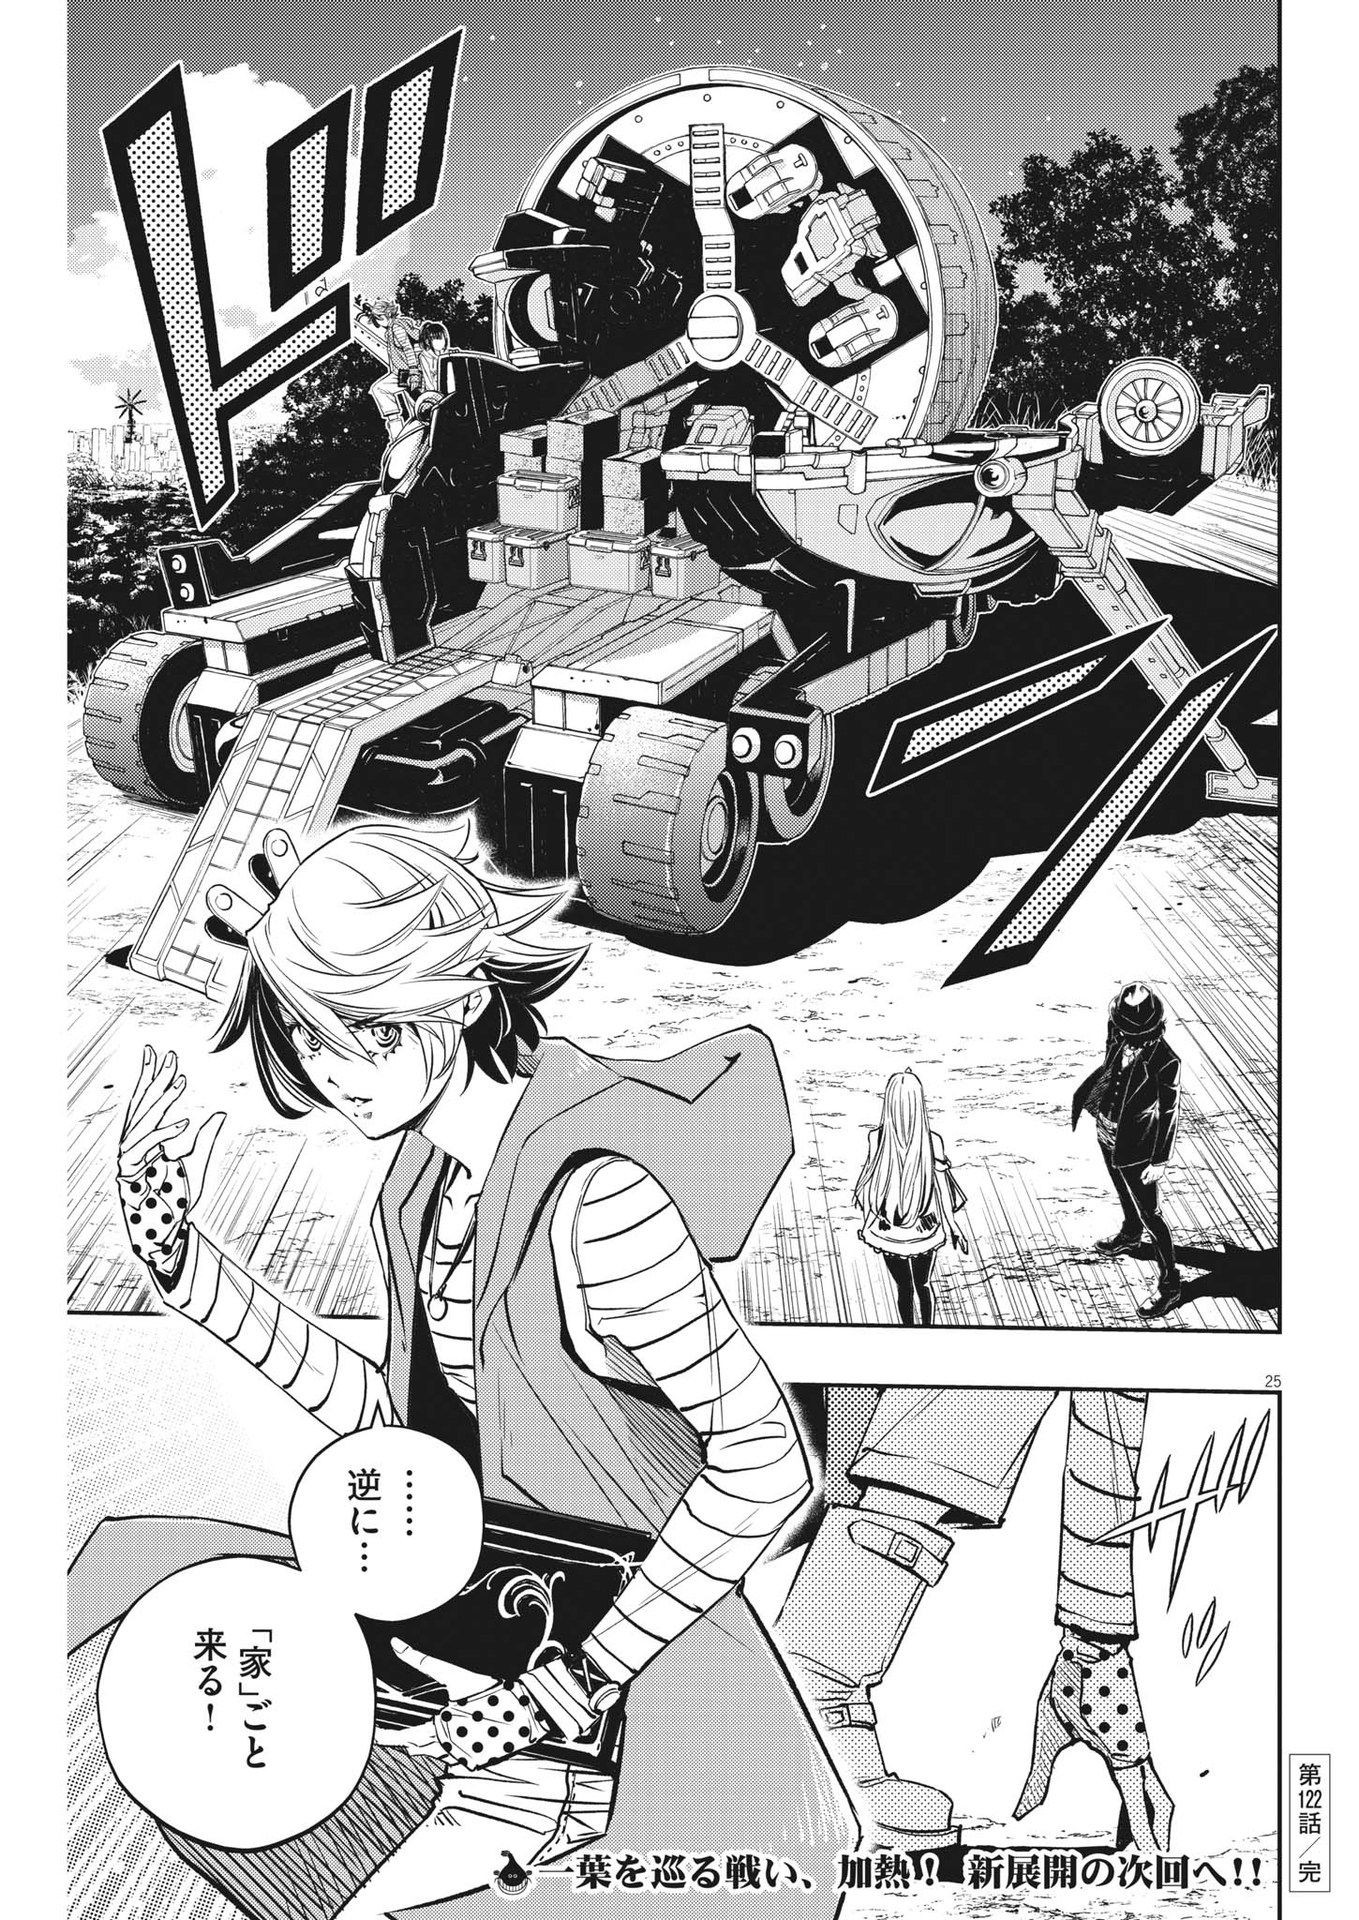 Read Kamen Rider W: Fuuto Tantei Chapter 2 on Mangakakalot